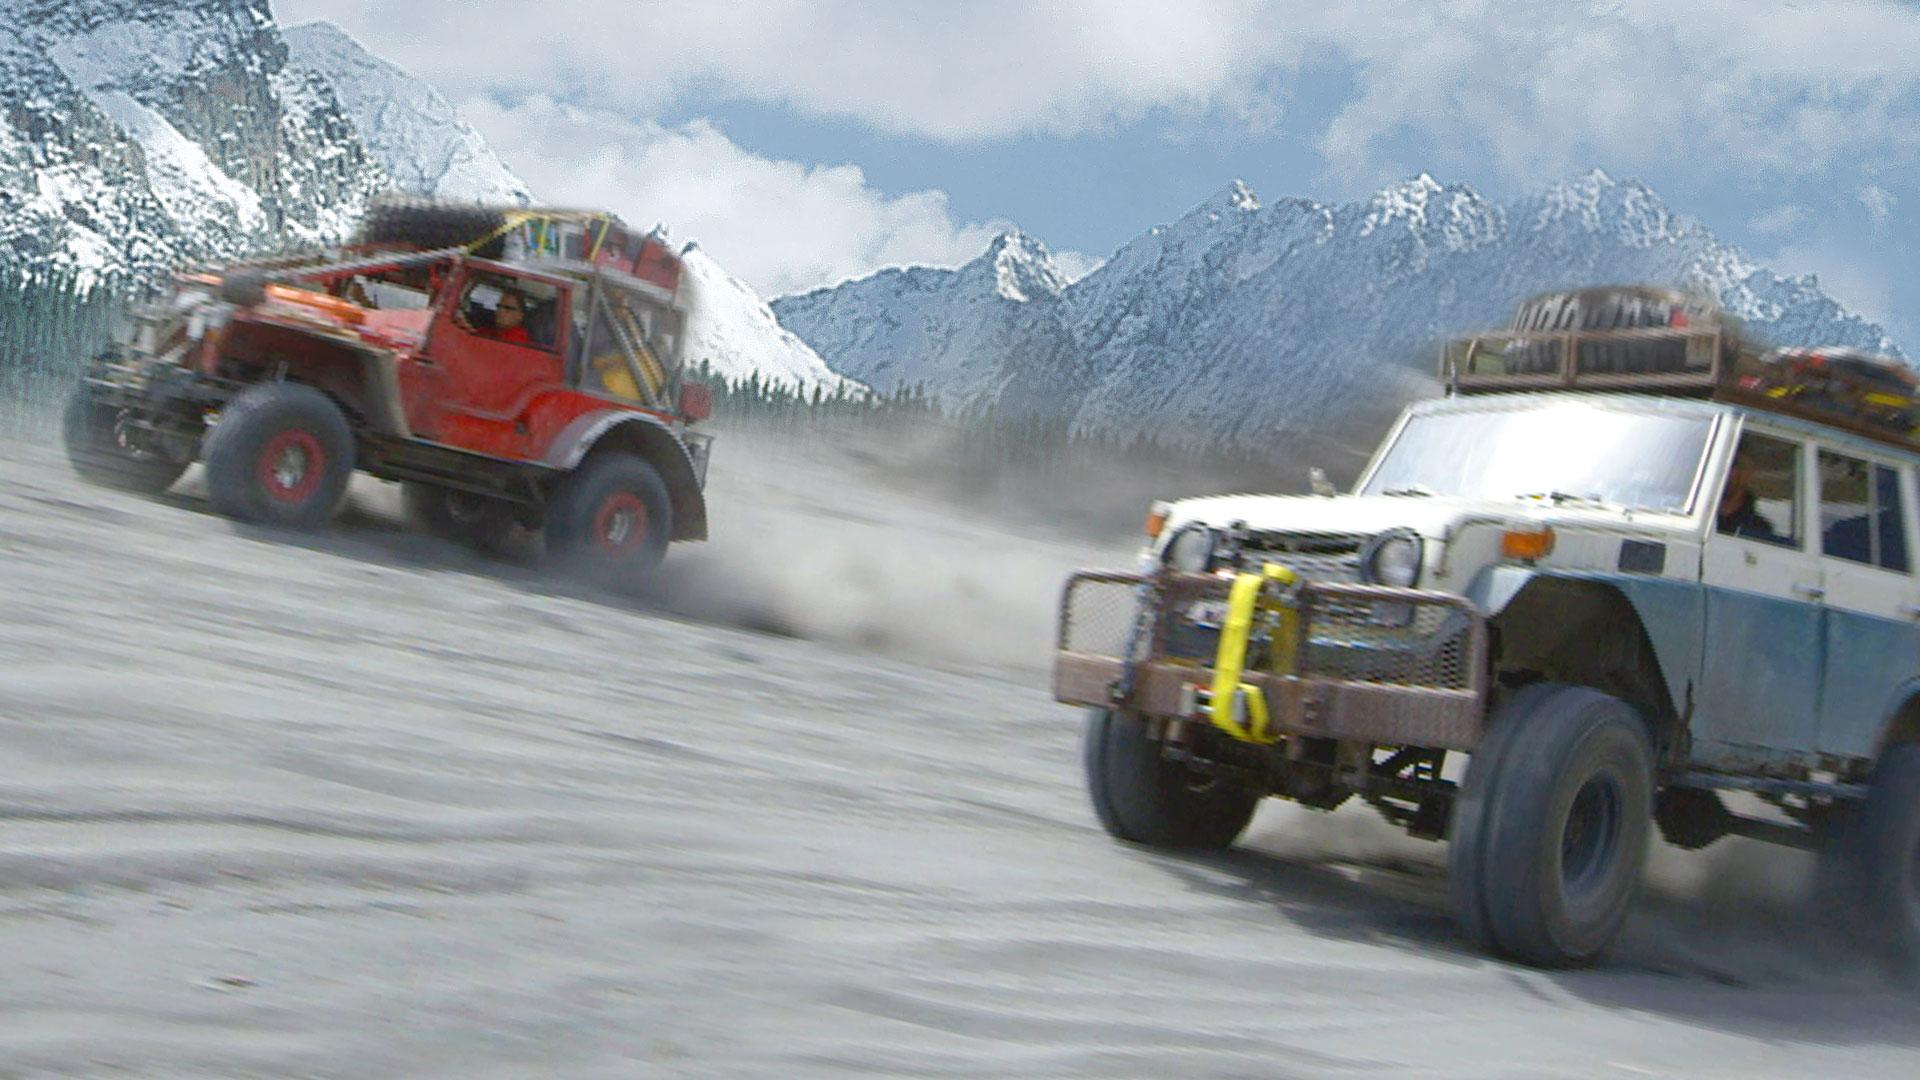 Alaska Off Road Warriors Full Episodes, Video & More